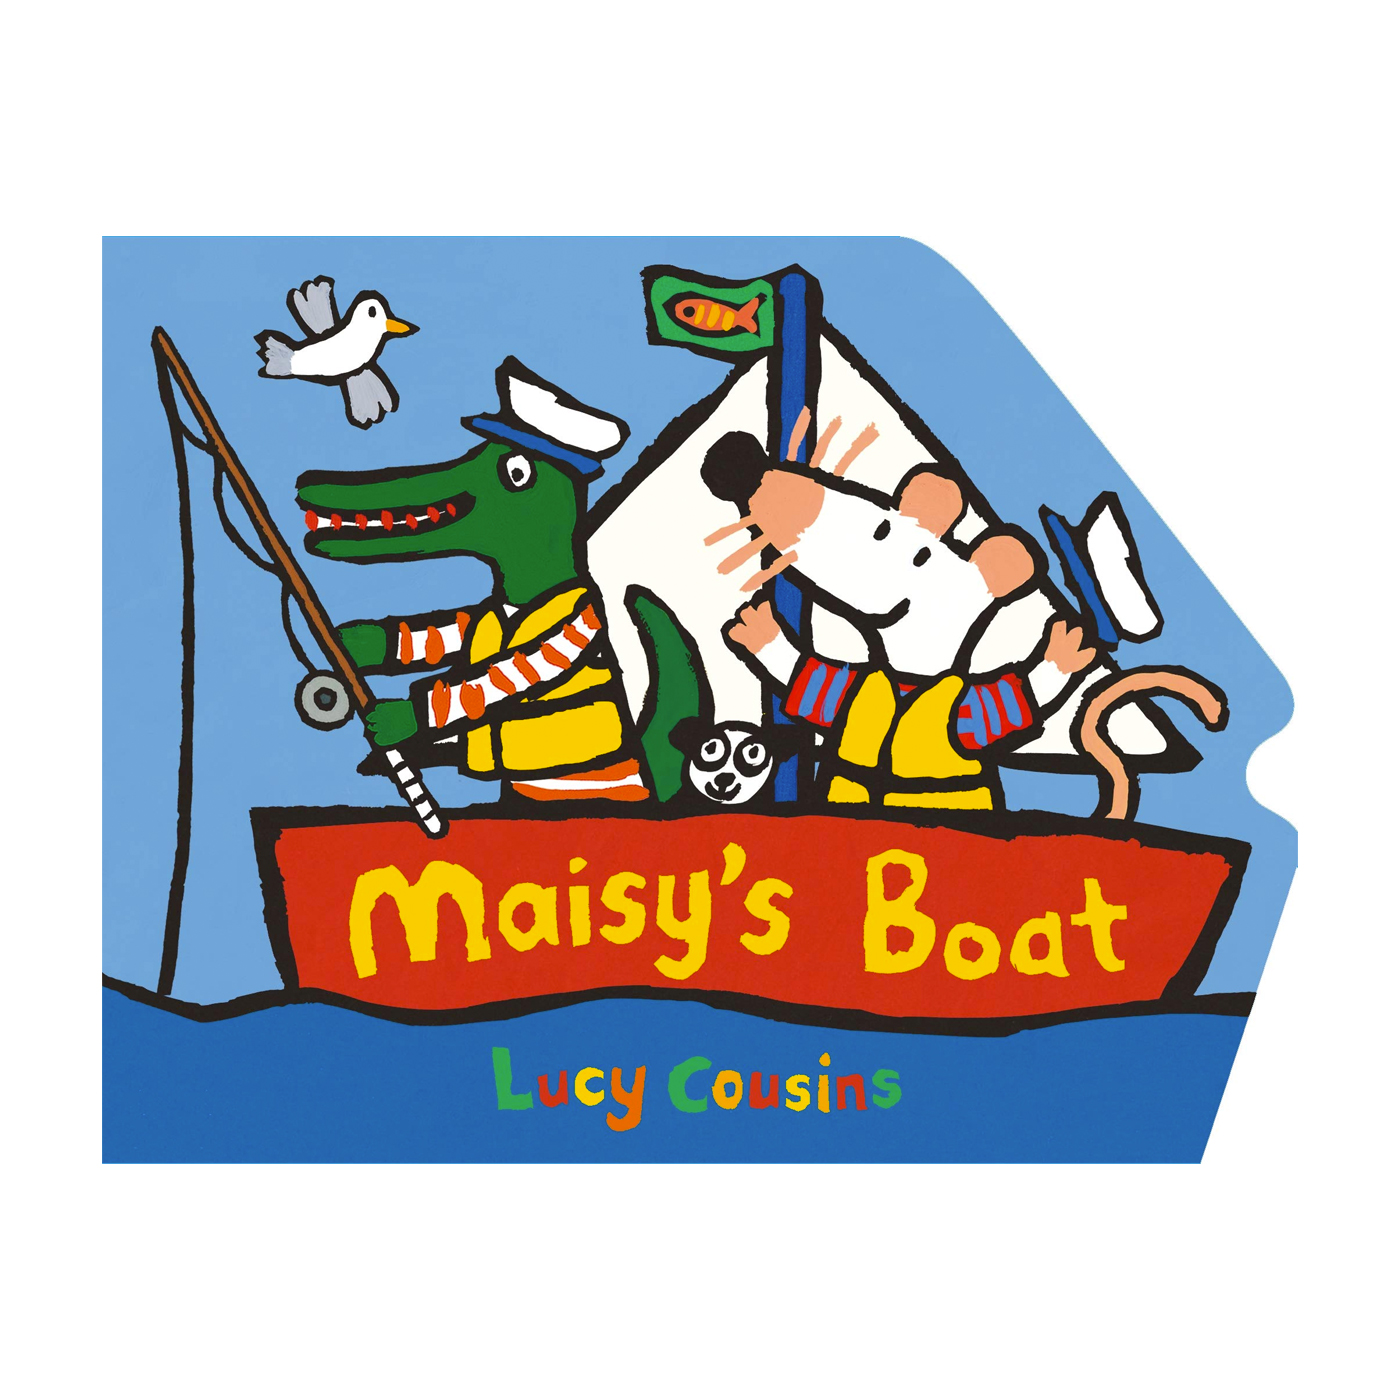  Maisy's Boat